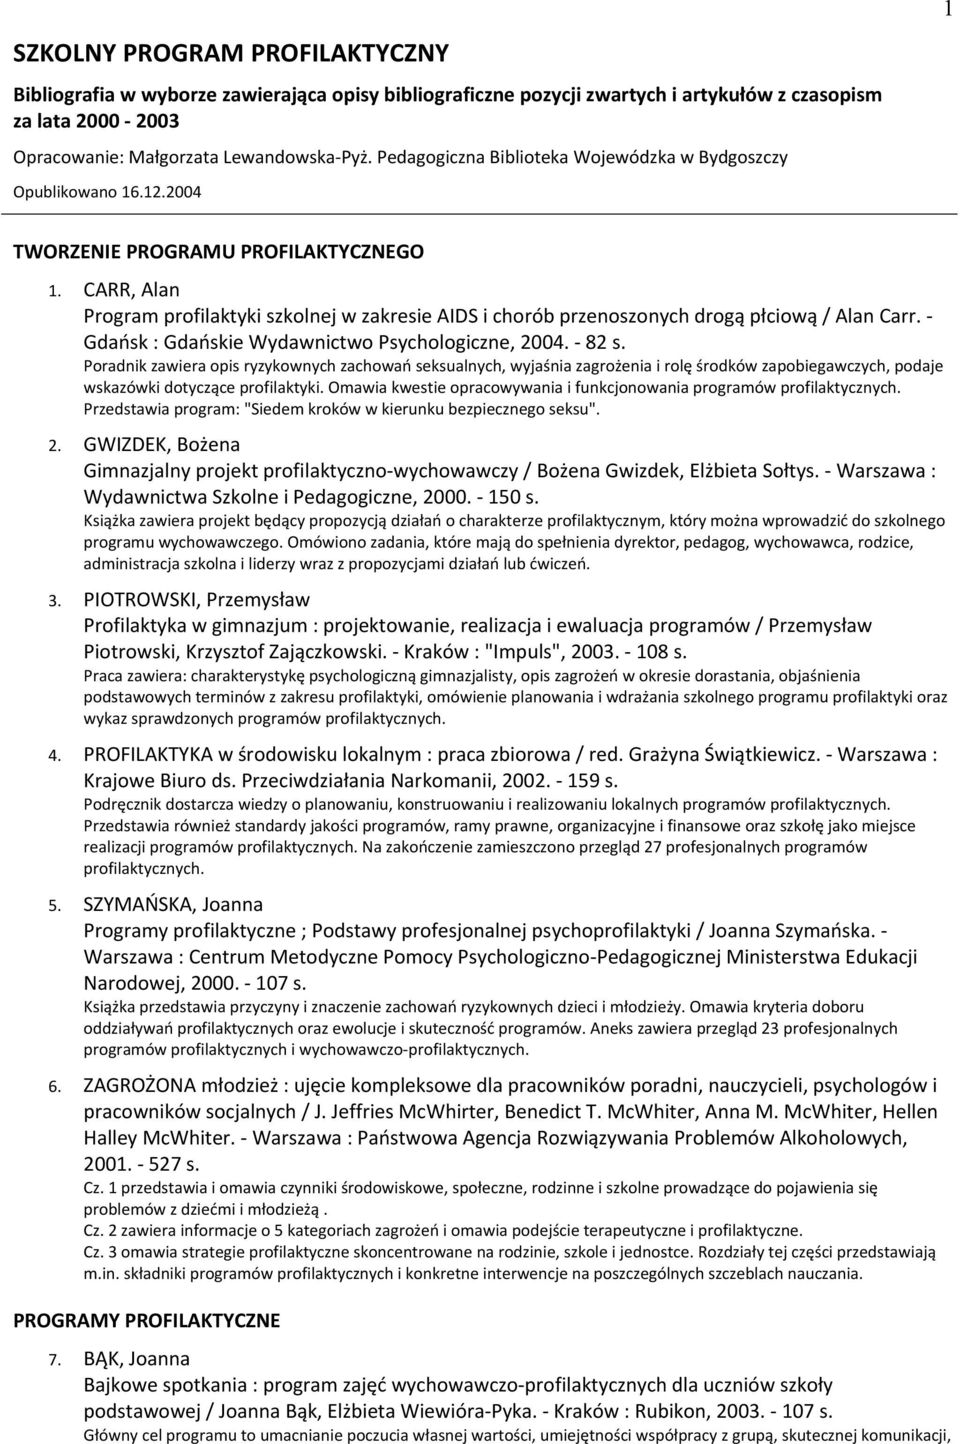 CARR, Alan Program profilaktyki szkolnej w zakresie AIDS i chorób przenoszonych drogą płciową / Alan Carr. - Gdańsk : Gdańskie Wydawnictwo Psychologiczne, 2004. - 82 s.